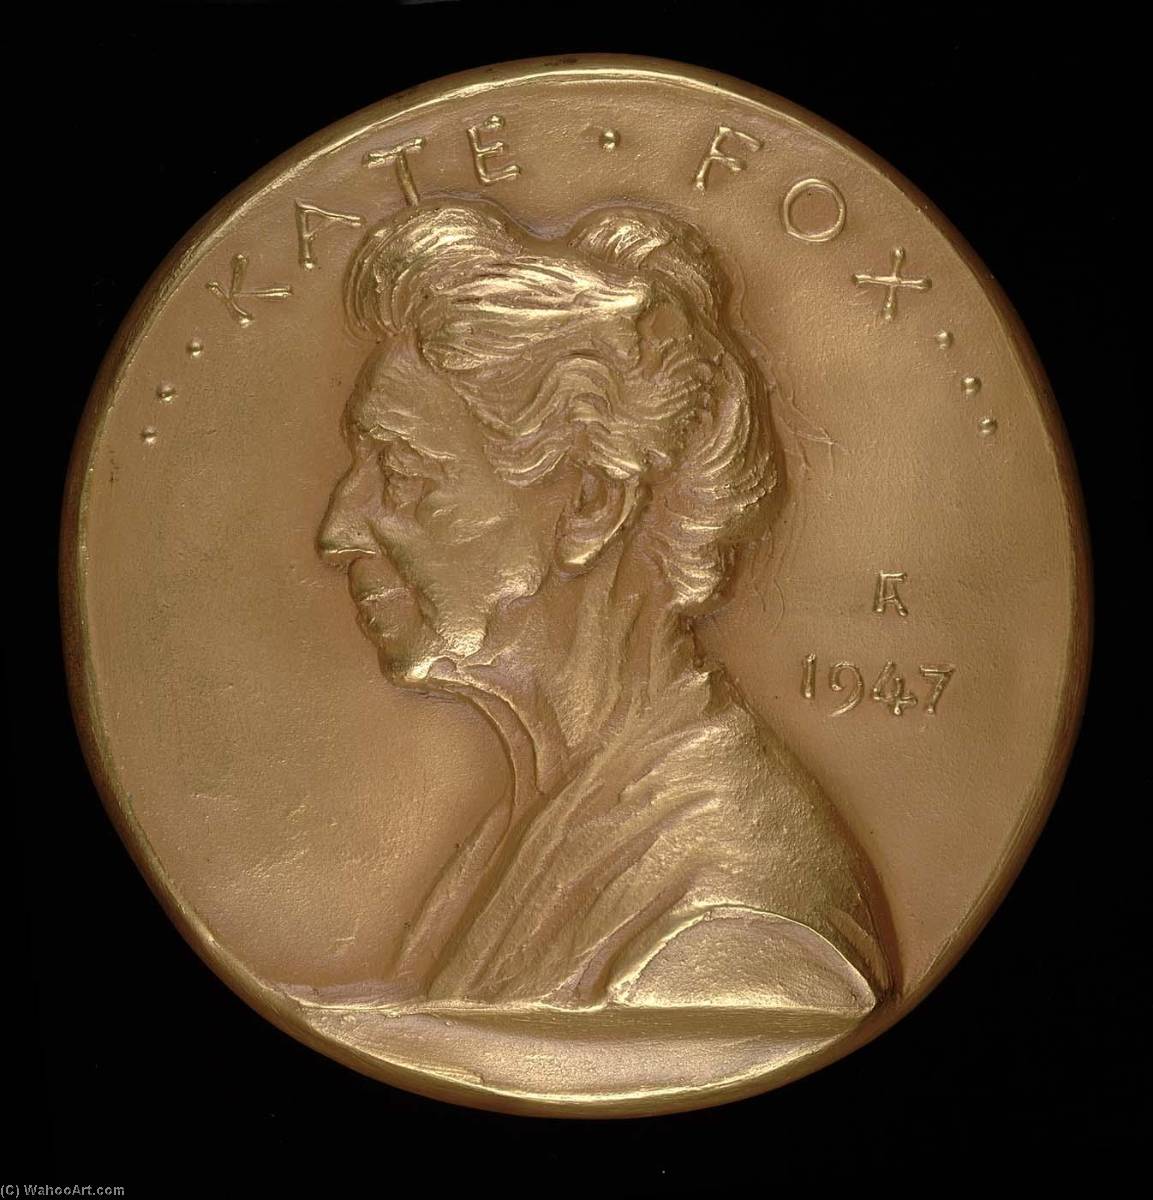 WikiOO.org - אנציקלופדיה לאמנויות יפות - ציור, יצירות אמנות Anthony De Francisci - Kate Fox, Medal